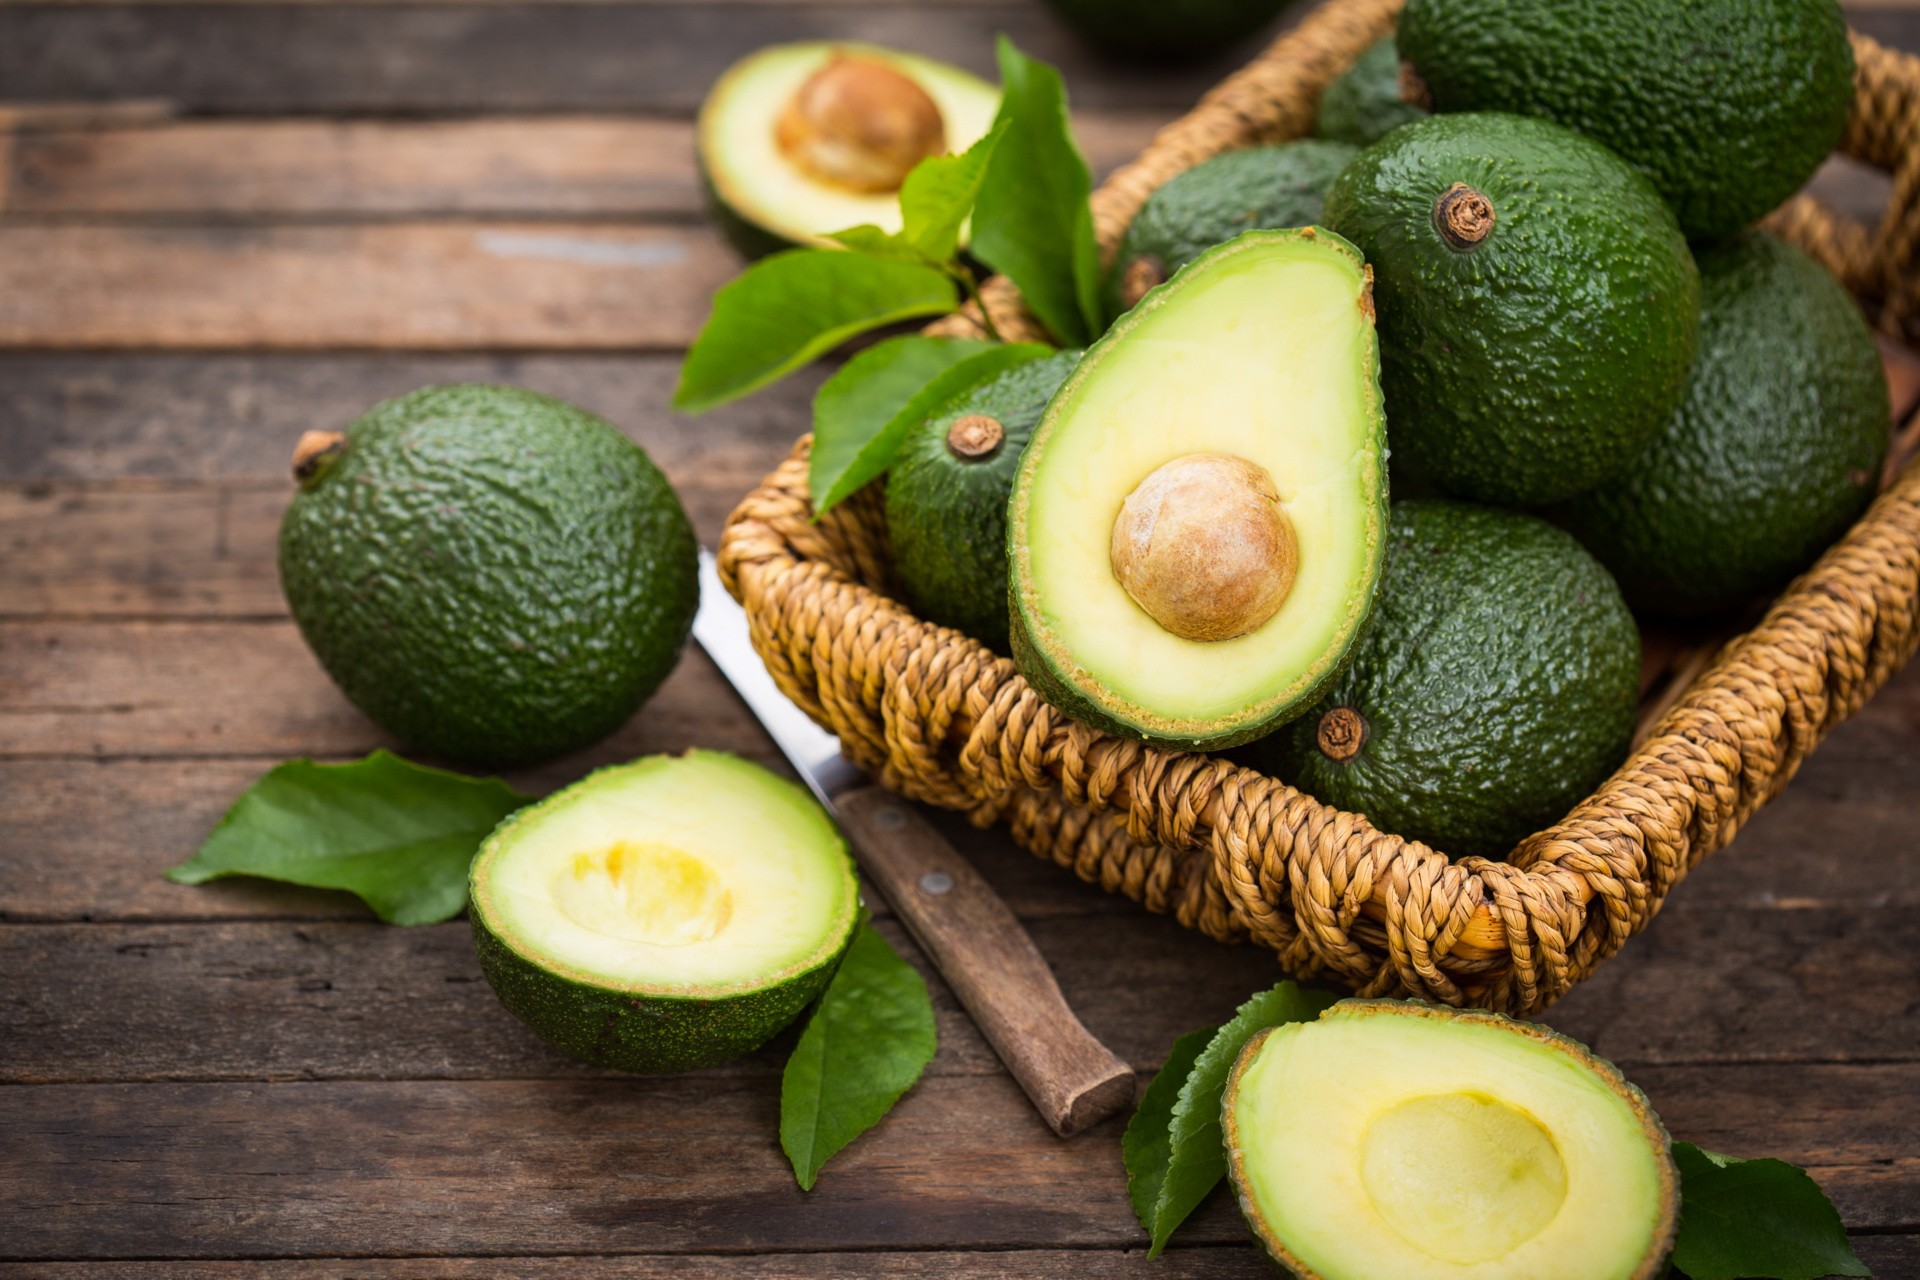 Avocado is a superfruit: Health benefits of avocado